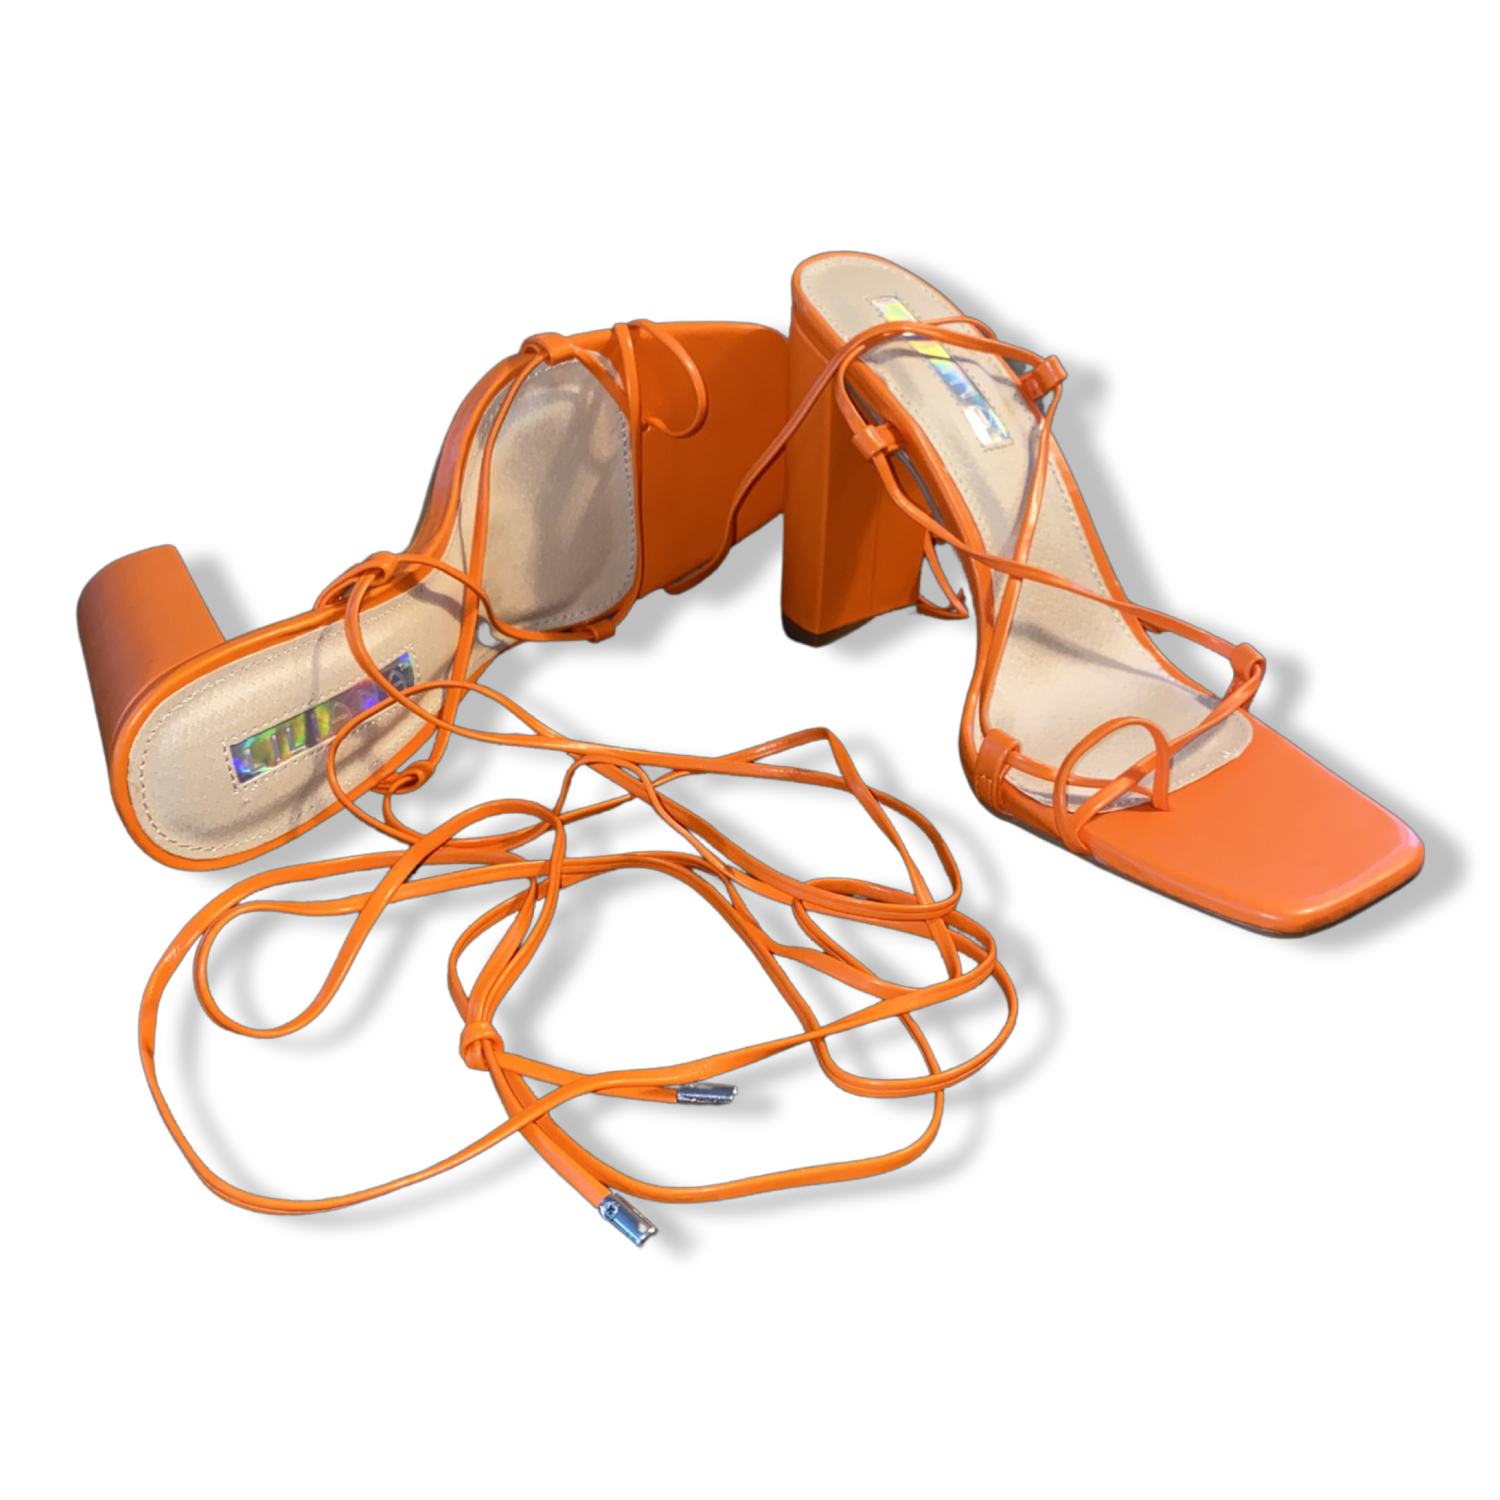 Orange Block Heels